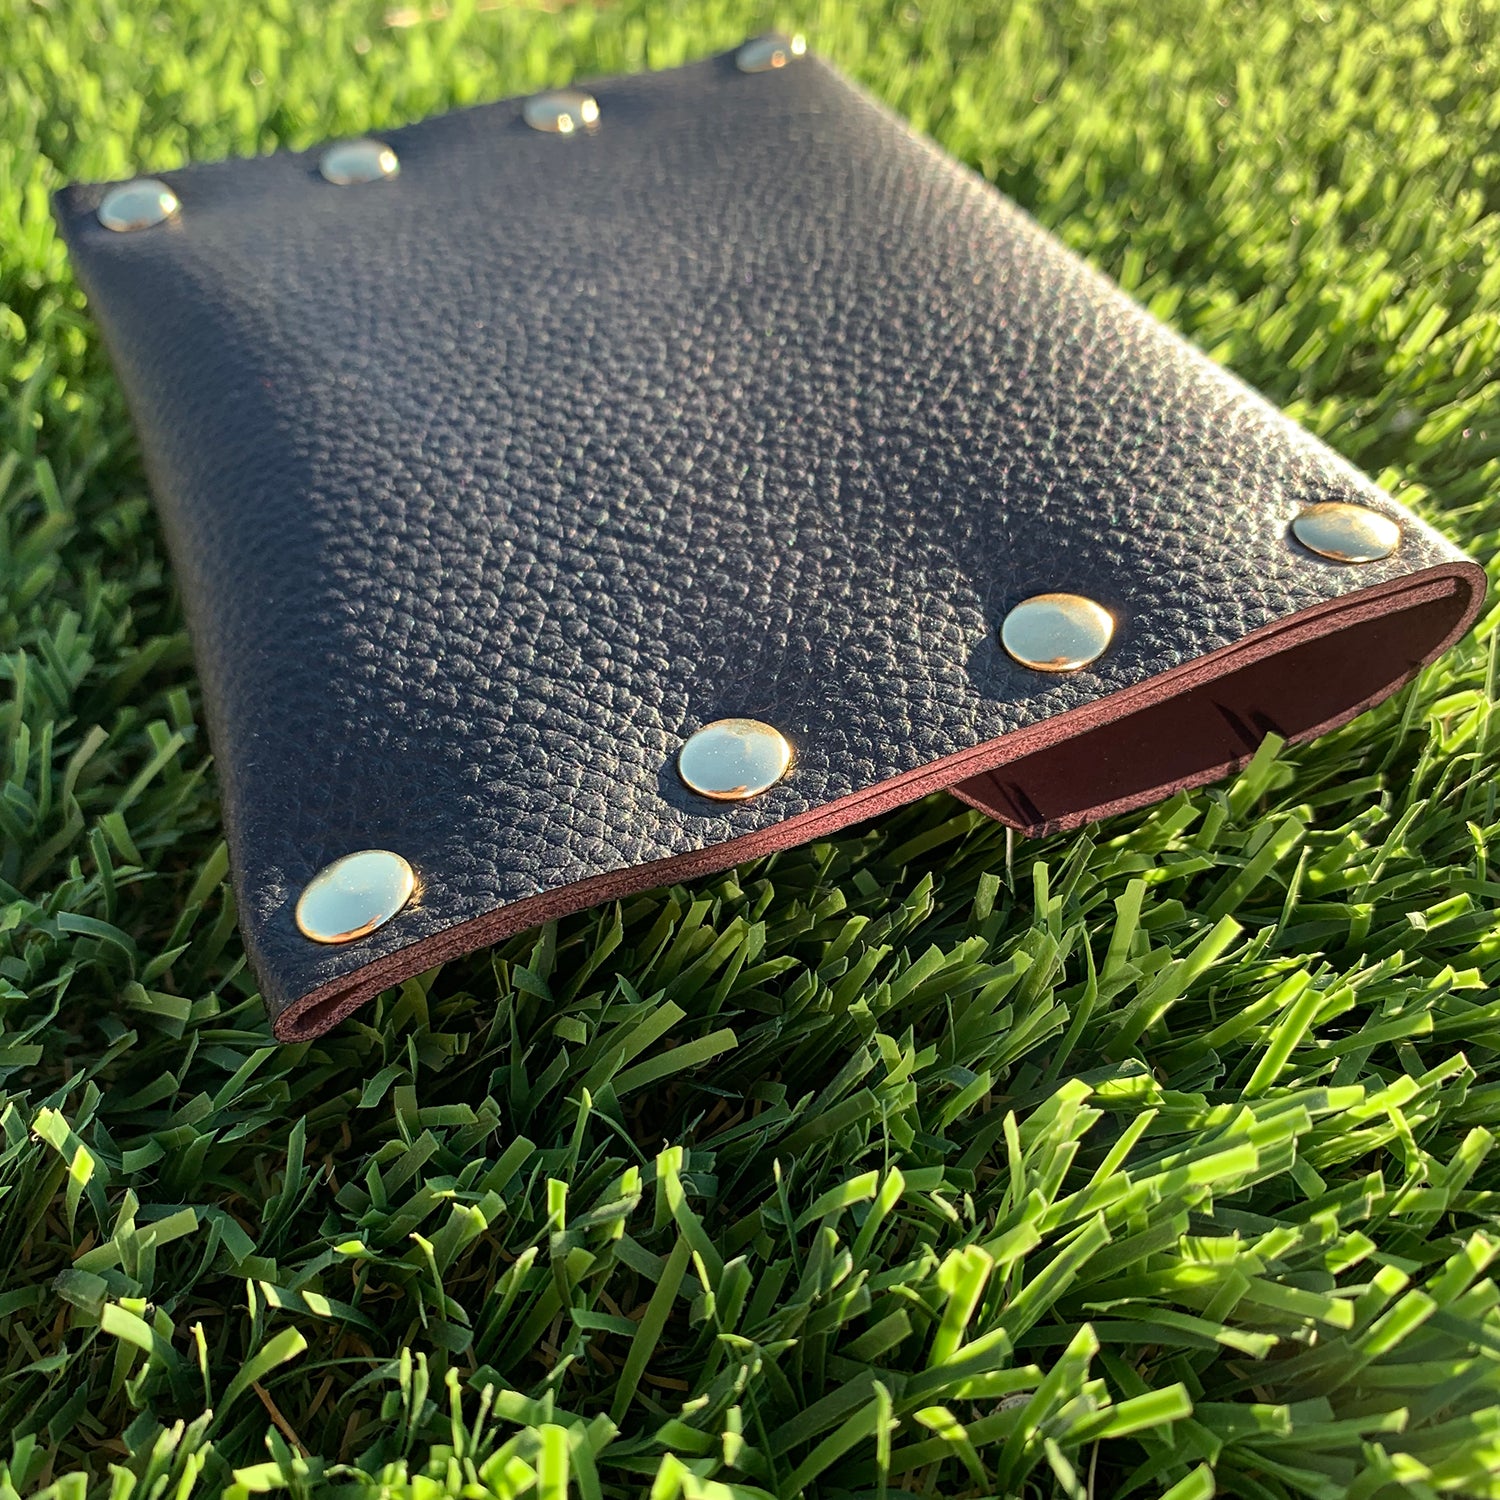 Black & Mauve Leather Card Case / Mini Wallet